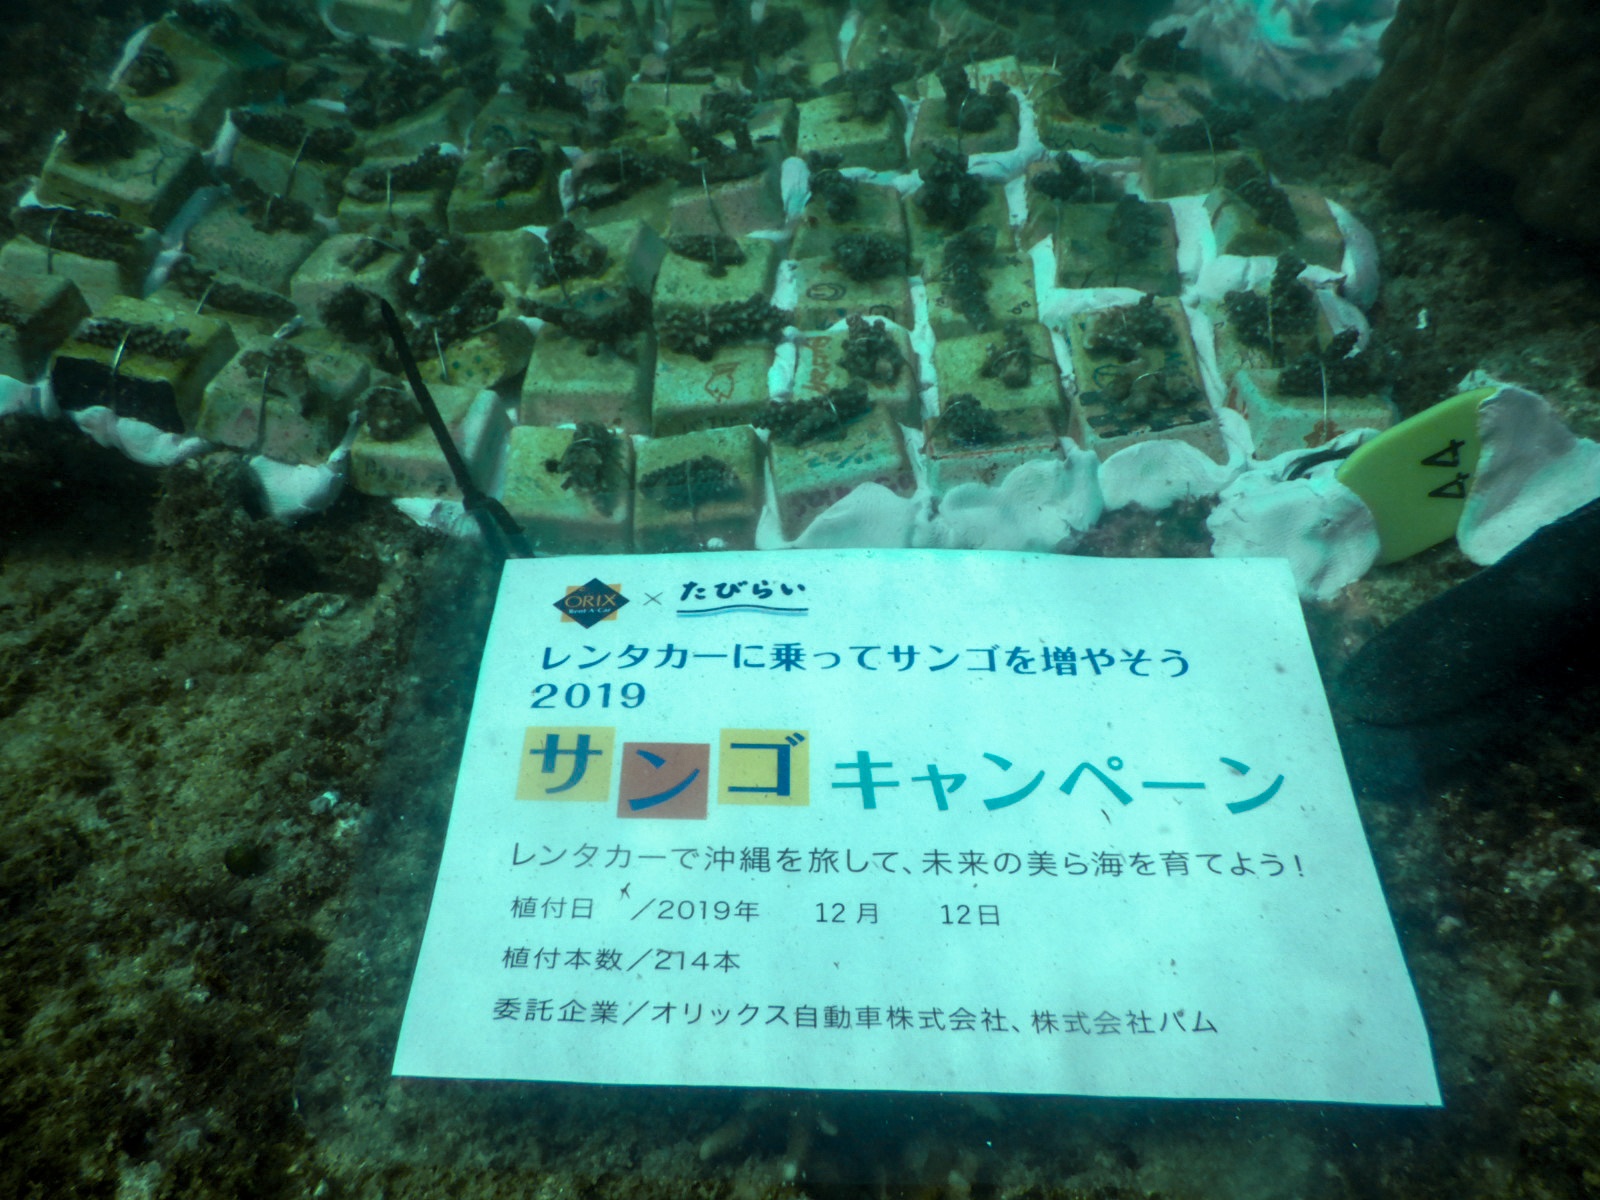 沖縄県浦添市港川の海に 214 本のサンゴを植付 レンタカー利用料金の一部をサンゴ保全活動に ニュース 株式会社 パム